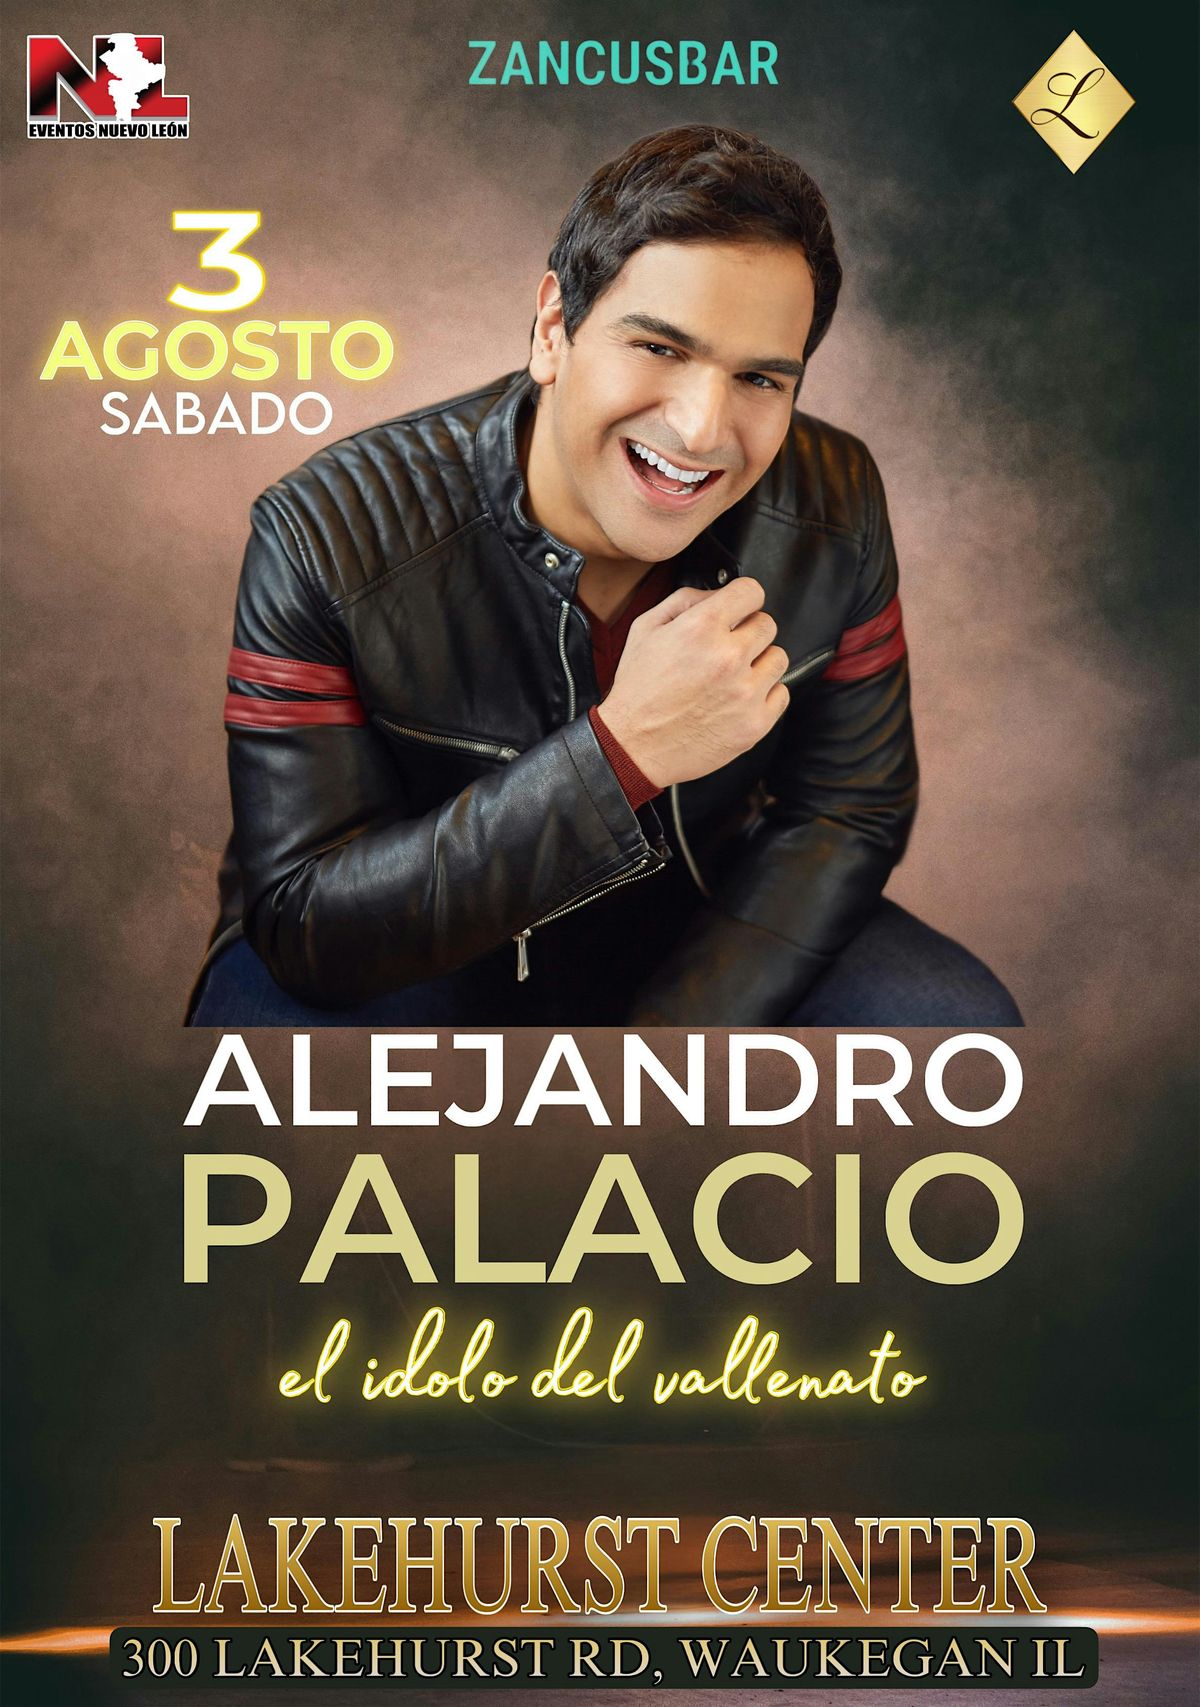 Alejandro Palacio en concierto